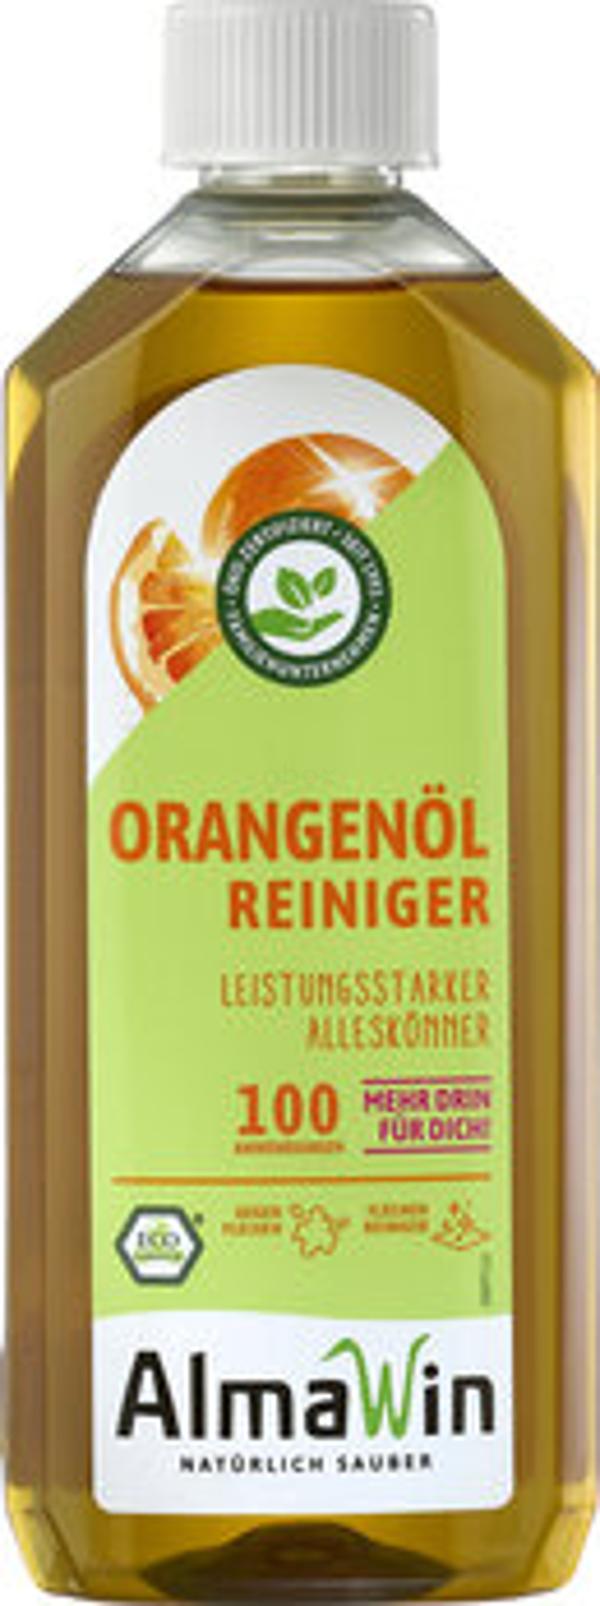 Produktfoto zu Orangenölreiniger; 0,5 Liter